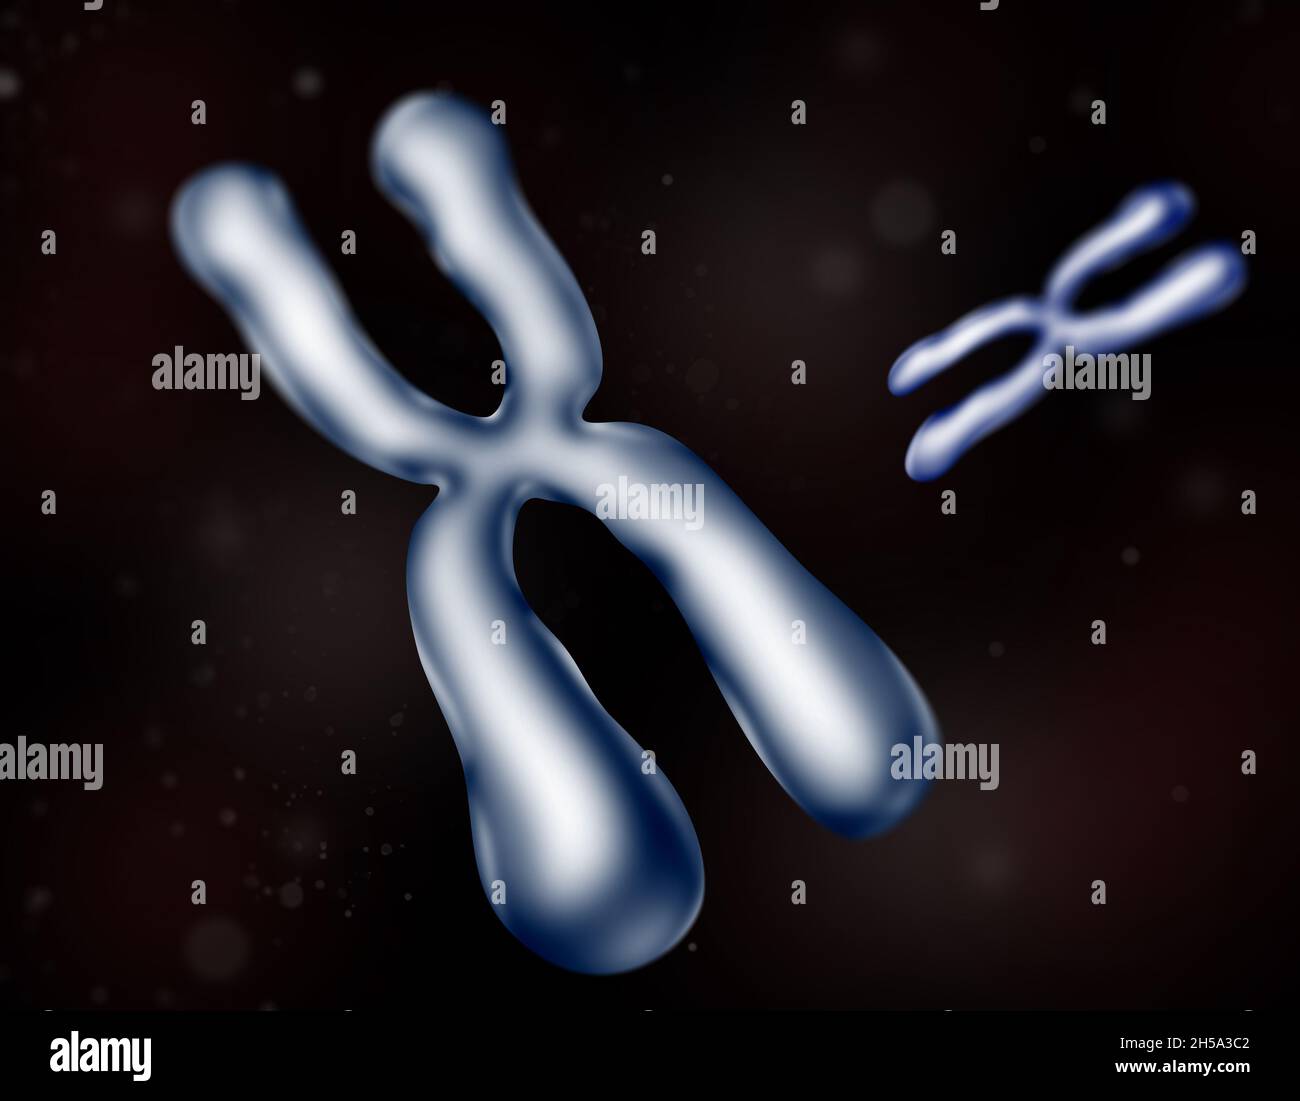 Cromosoma , una lunga molecola di DNA con parte o tutto il materiale genetico di un organismo. Due cromosomi 3d colore blu isolato. Foto Stock